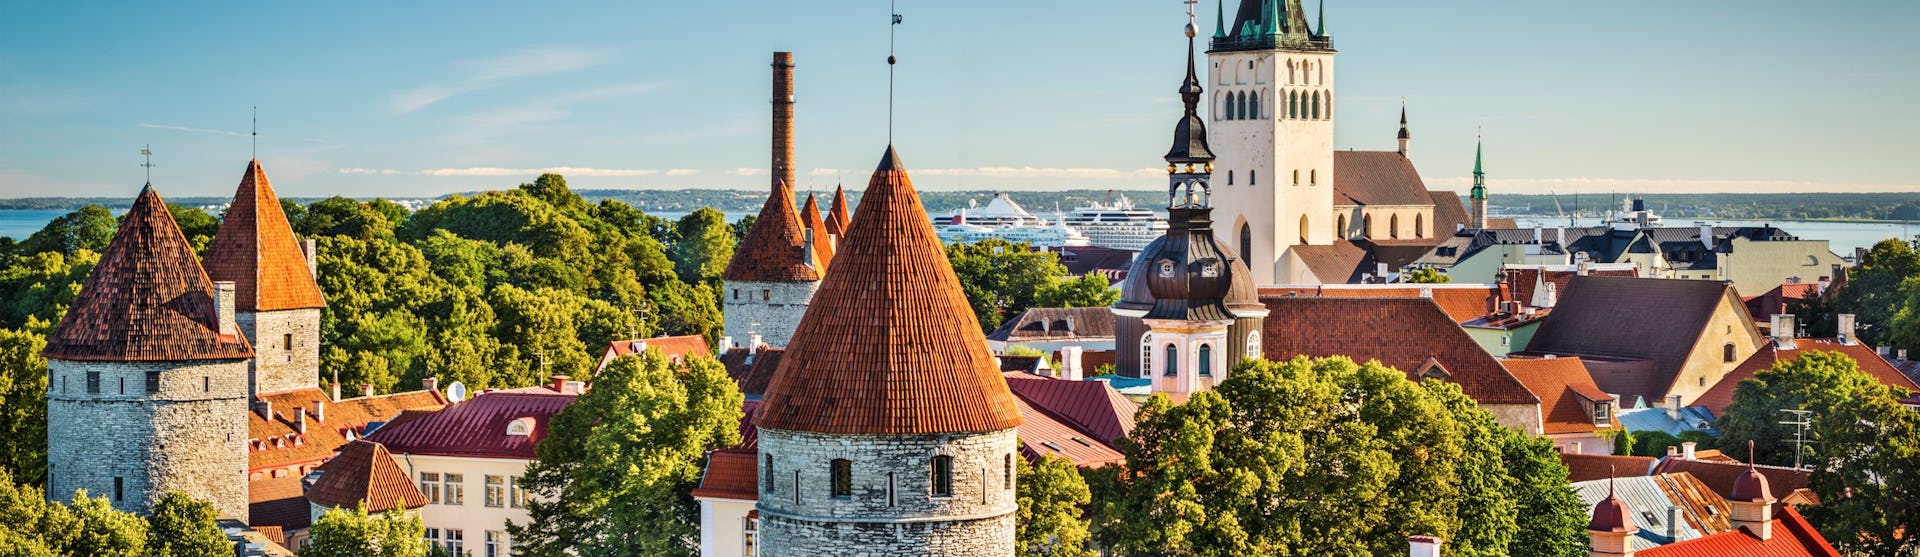 Estonia-Tallinn-Baltics-Northern-Europe